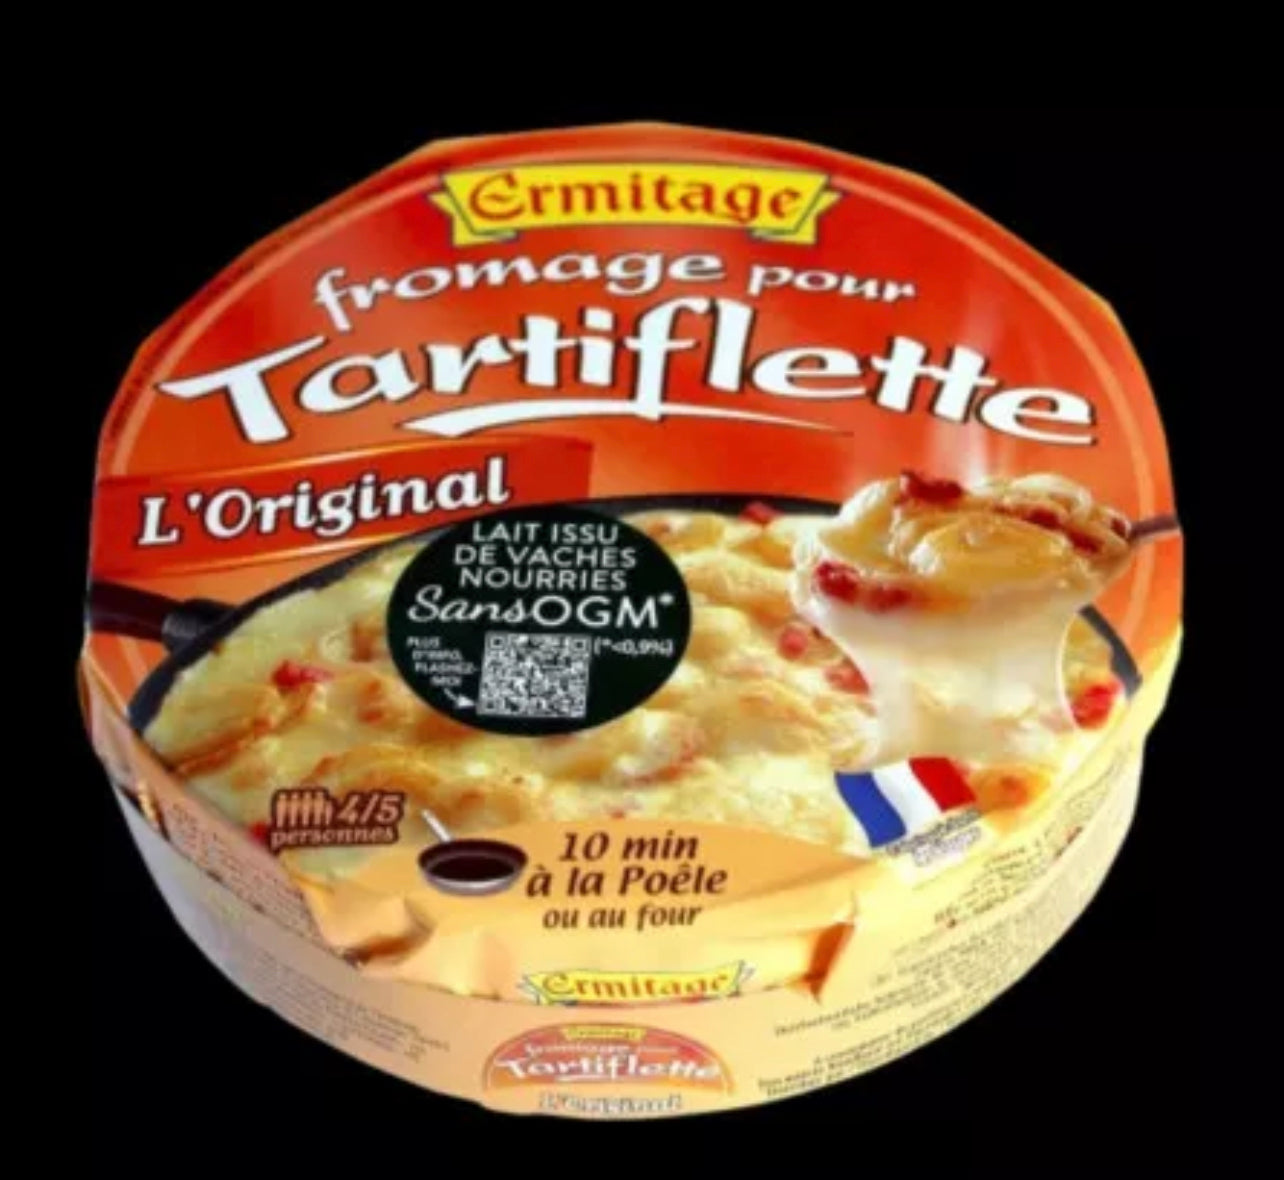 Cheese for tartiflette - 600g